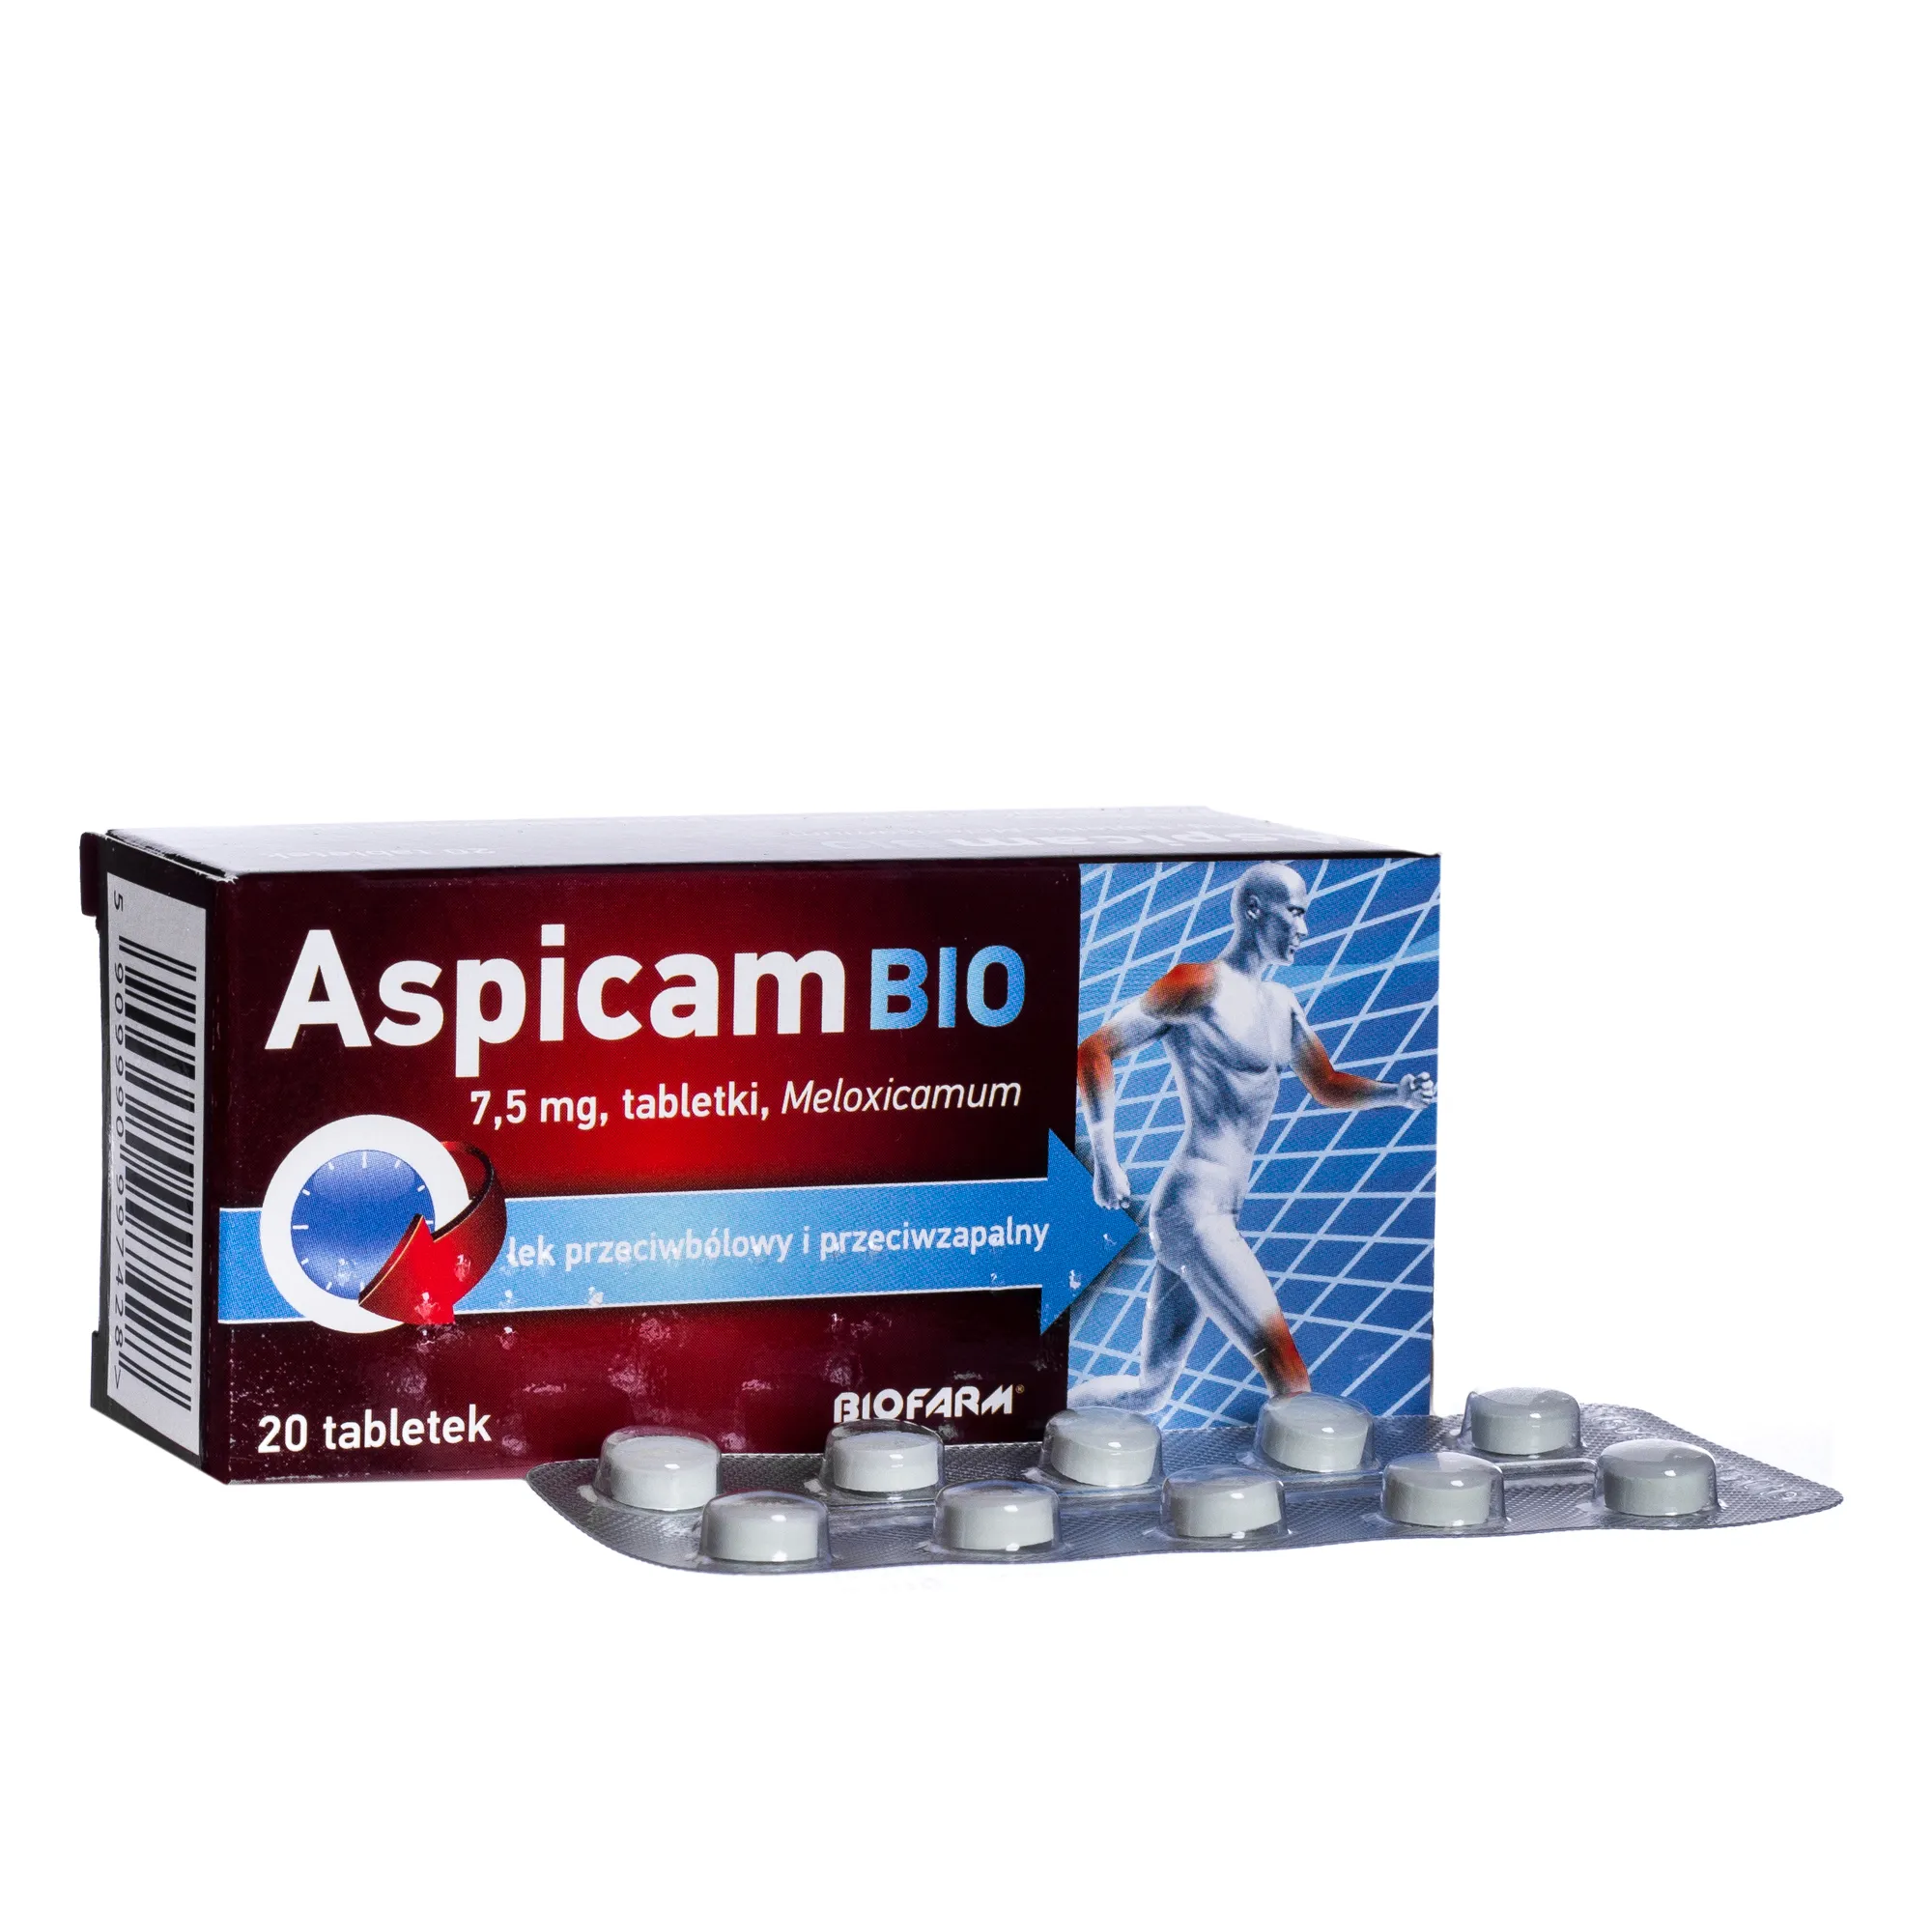 Aspicam Bio, lek przeciwbólowy, 20 tabletek